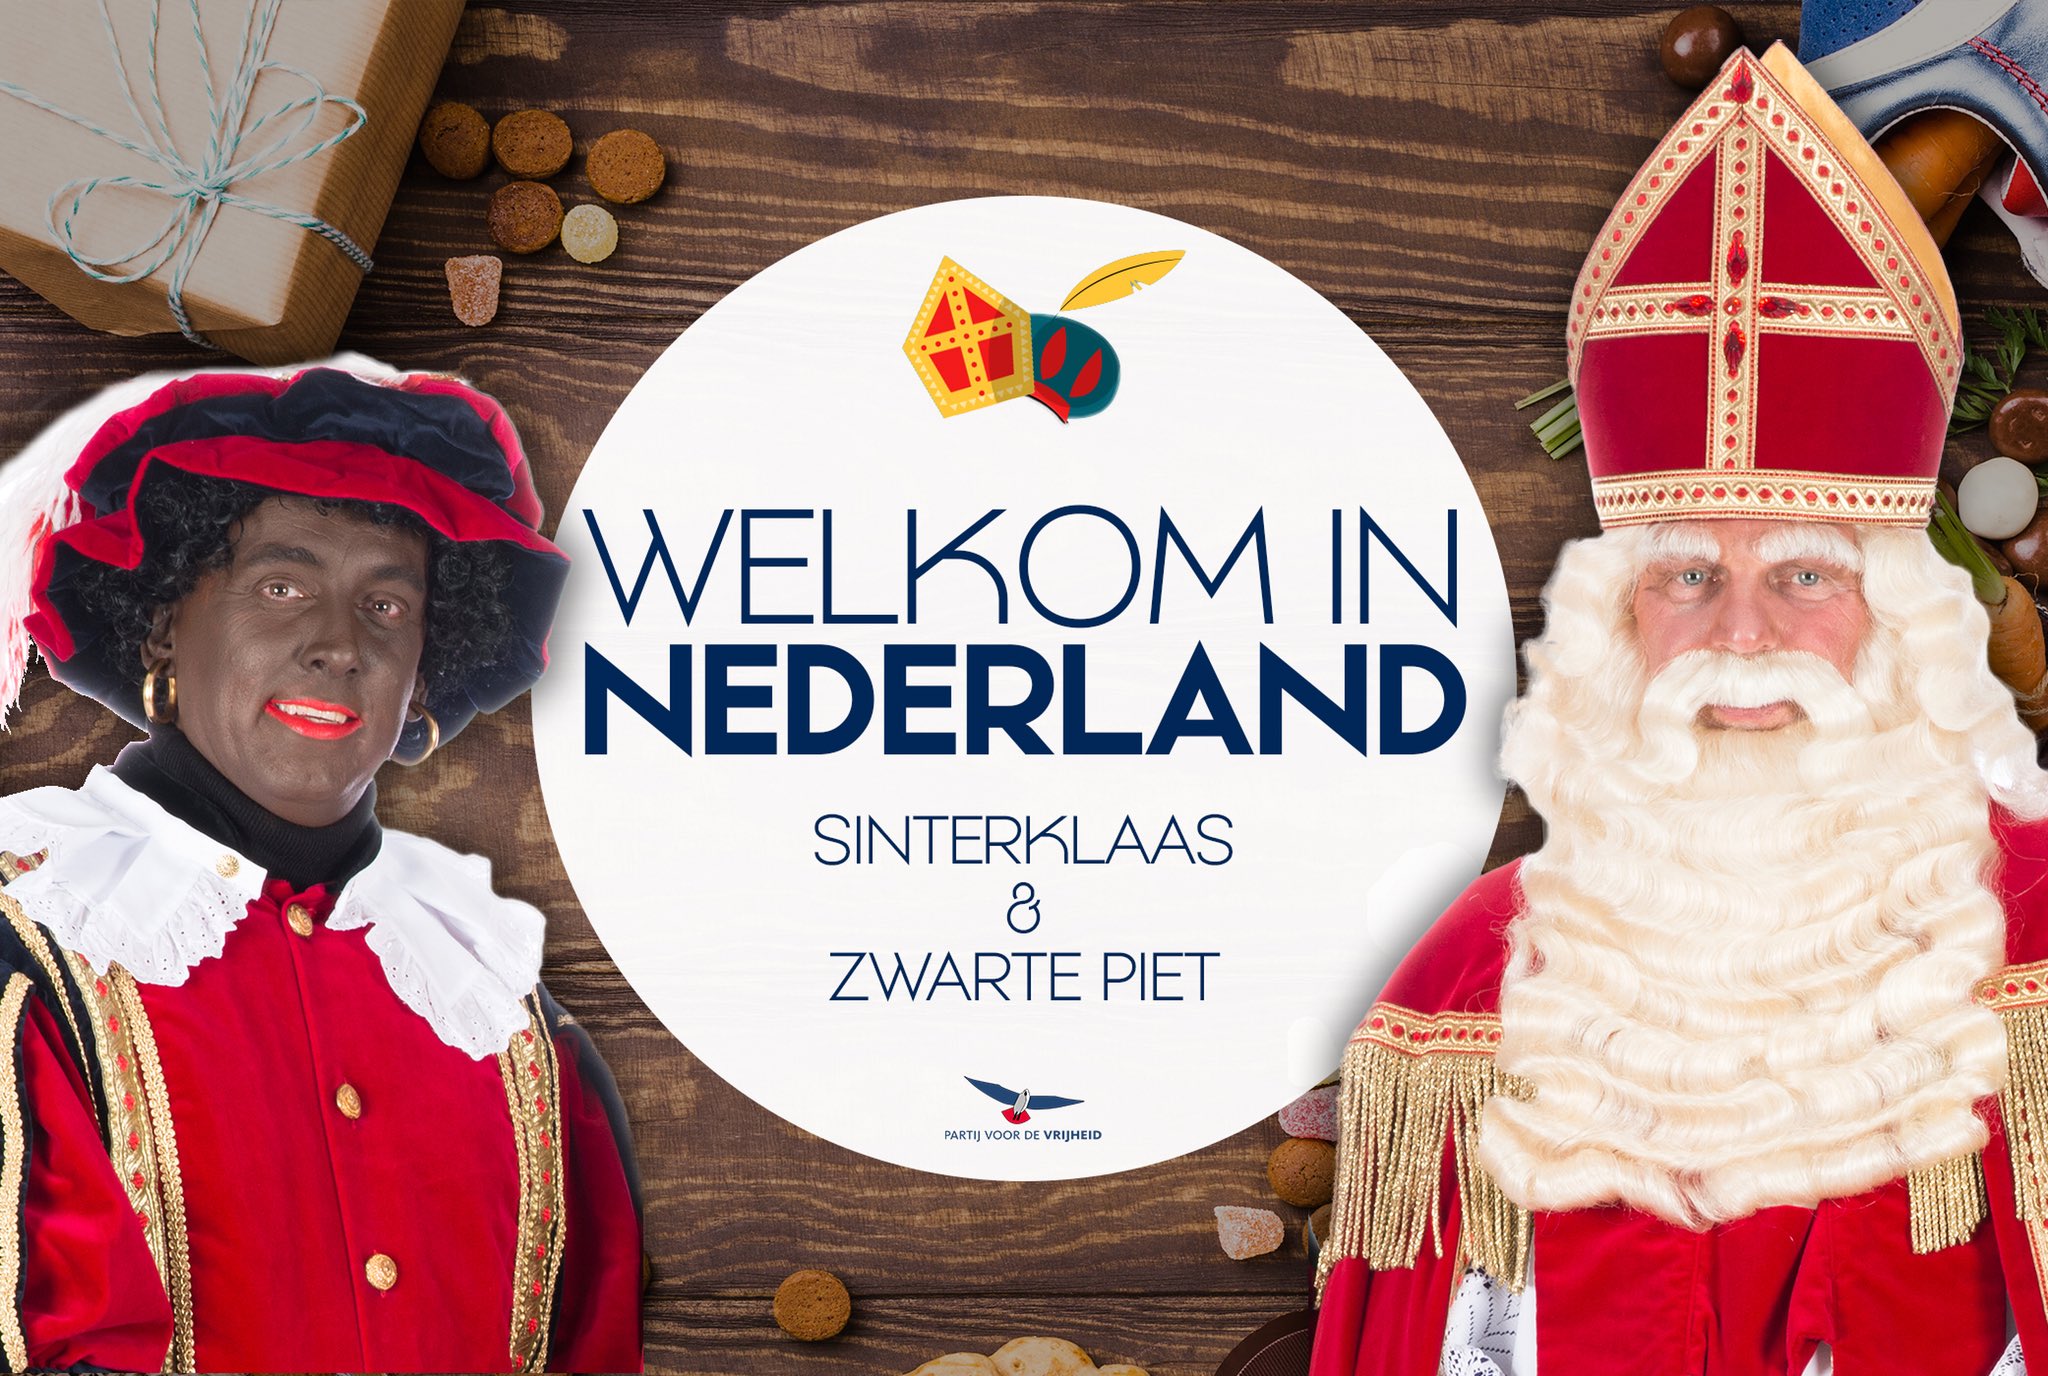 Mordrin Verloren hart binair Geert Wilders on Twitter: "Welkom in Nederland Sinterklaas en ZWARTE Piet!  https://t.co/9XHLy0woPk" / Twitter